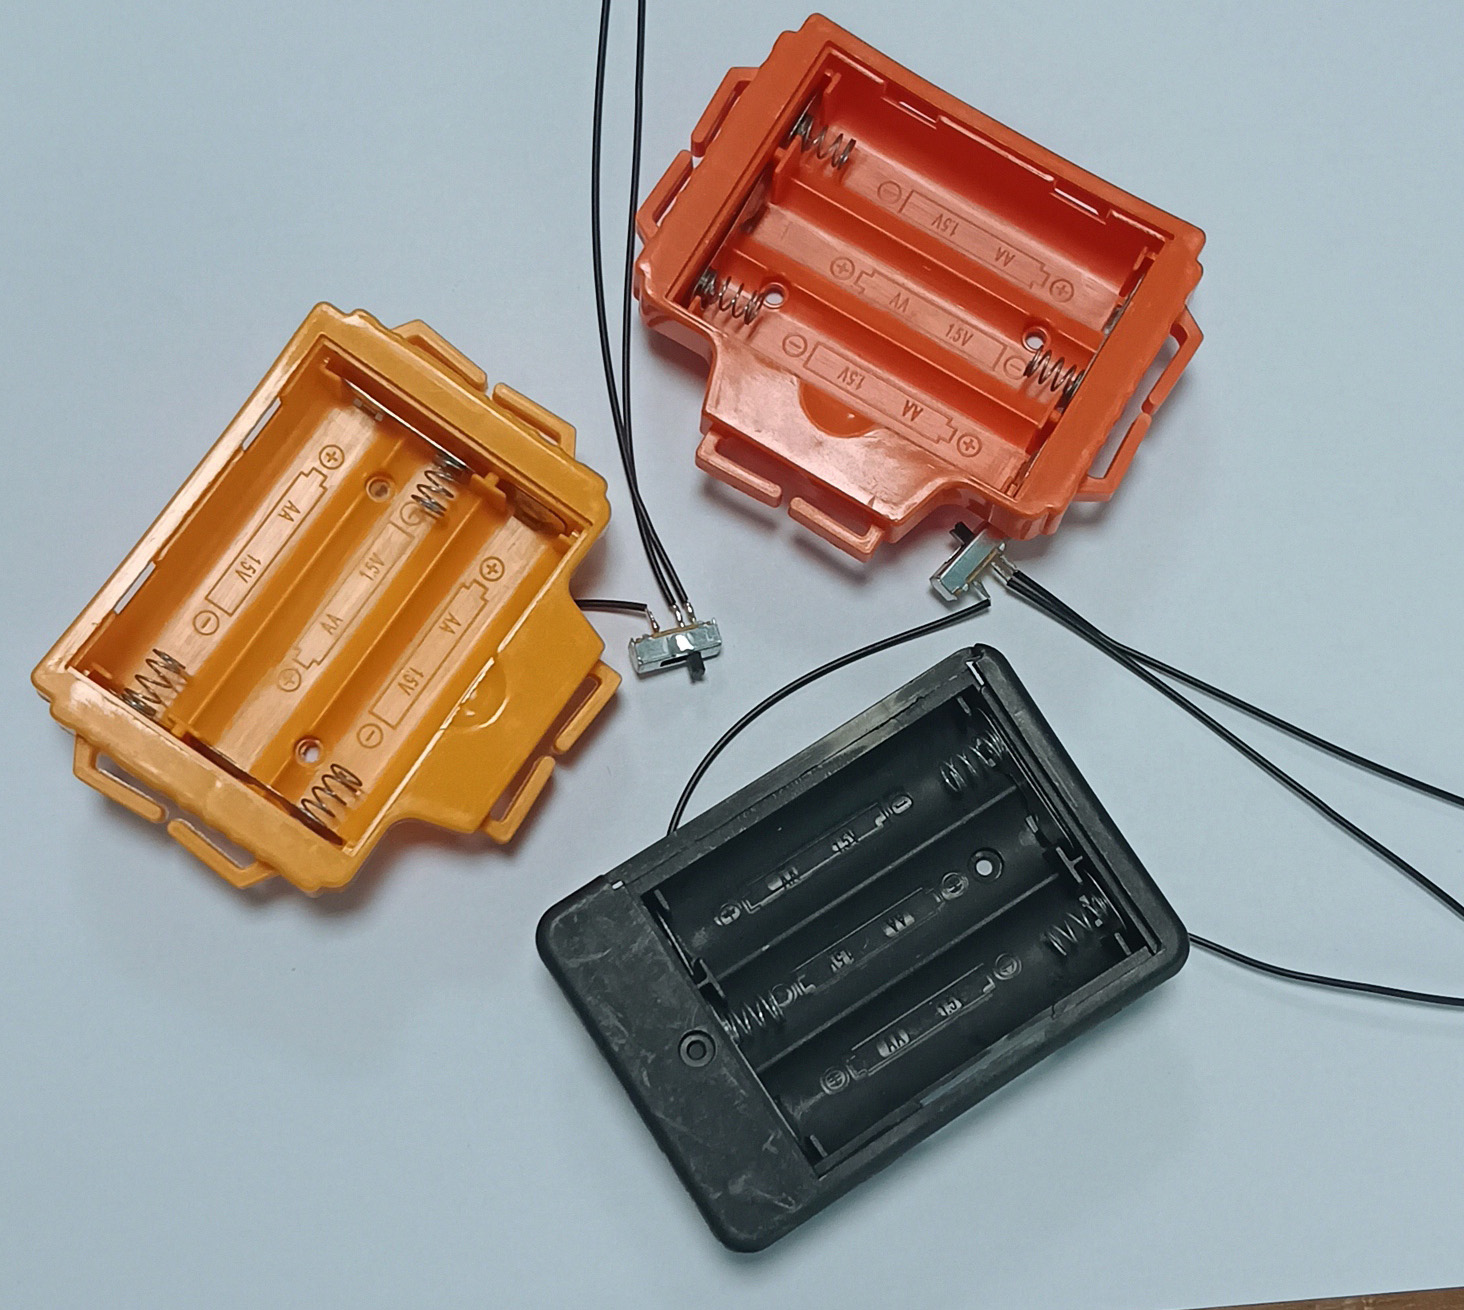 正负极电池片自动组装设备的功能、工作原理及应用产品